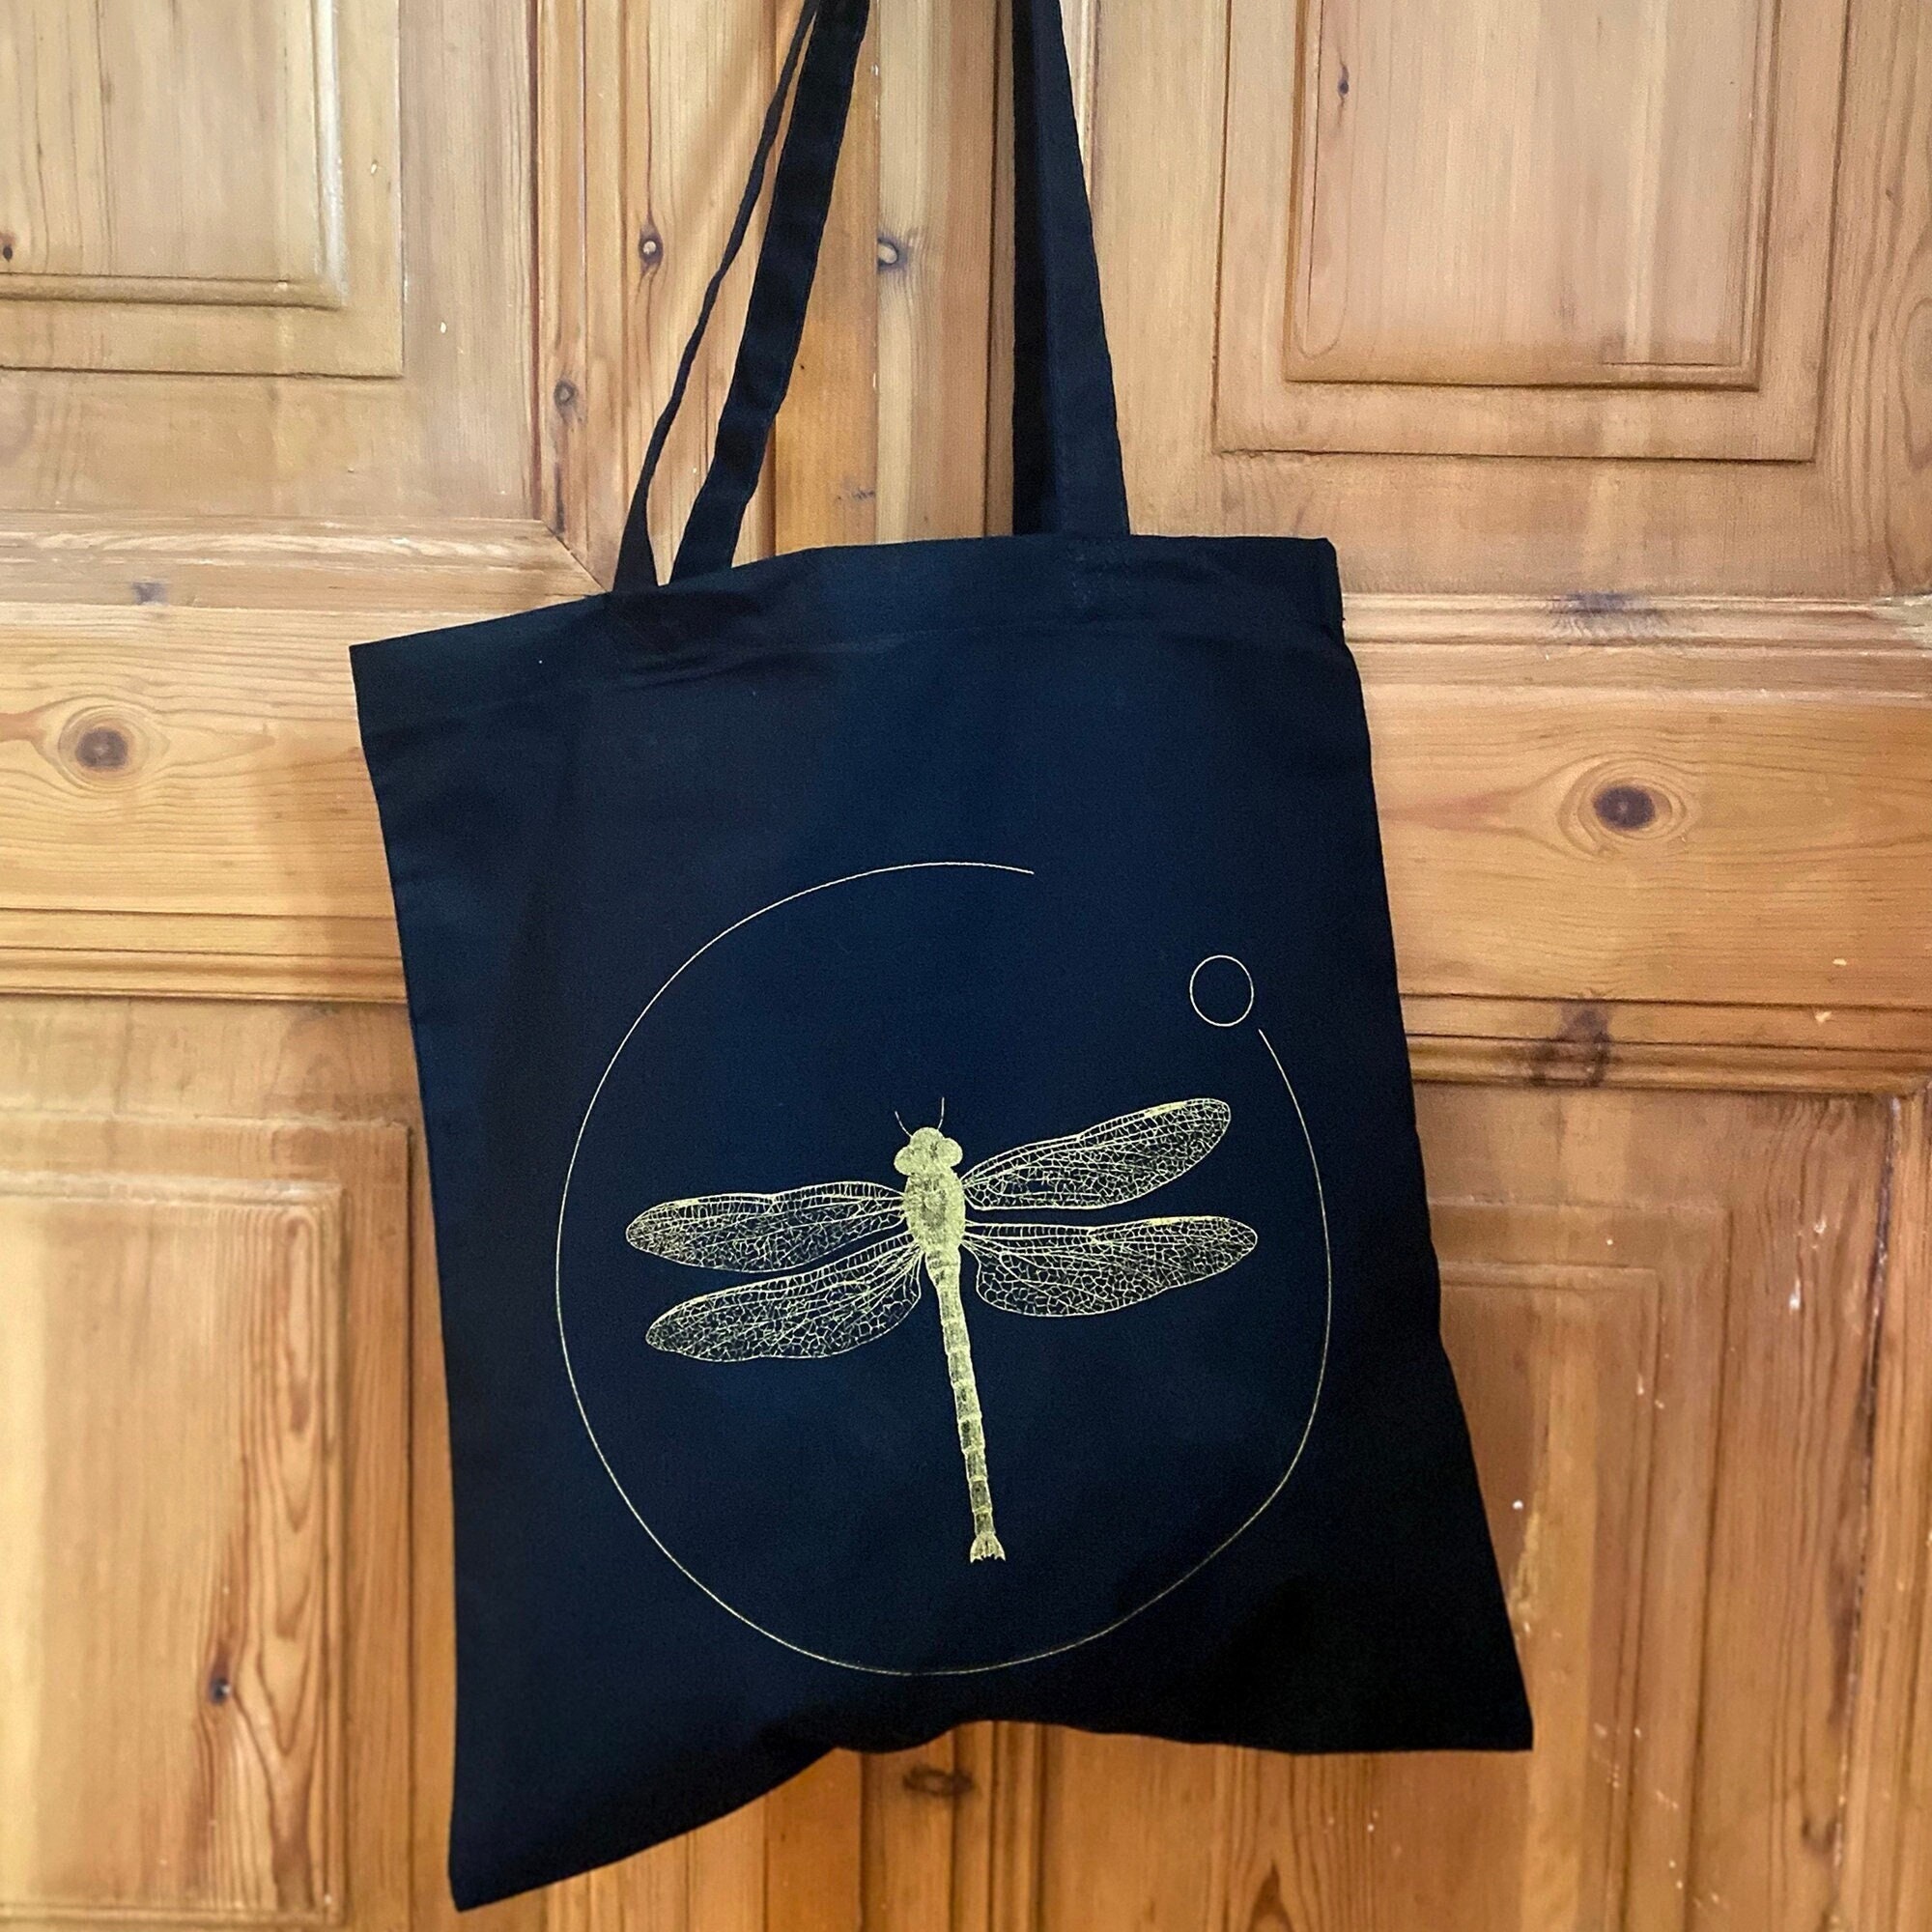 Blue Dragonfly Tote Bag, Dragonfly Beach Bag, Work Bag, Book Bag, Travel Bag,  Large Dragonfly Bag, Dragonfly Lover Gift - Etsy